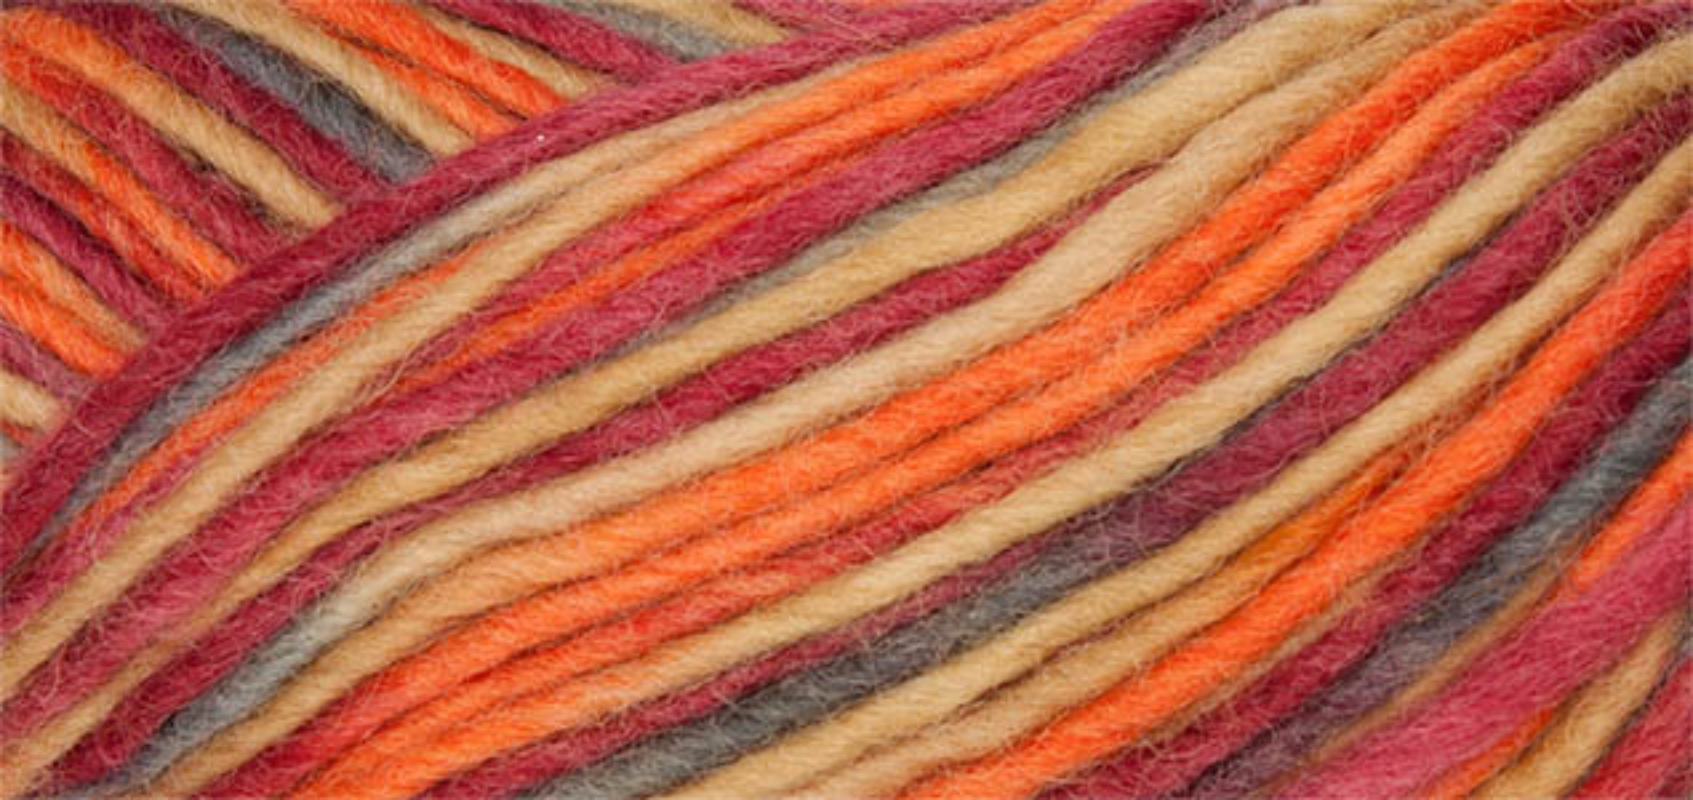 Filz Wolle Color Linie 231 von ONline 0136 - orange / bordeaux / senf